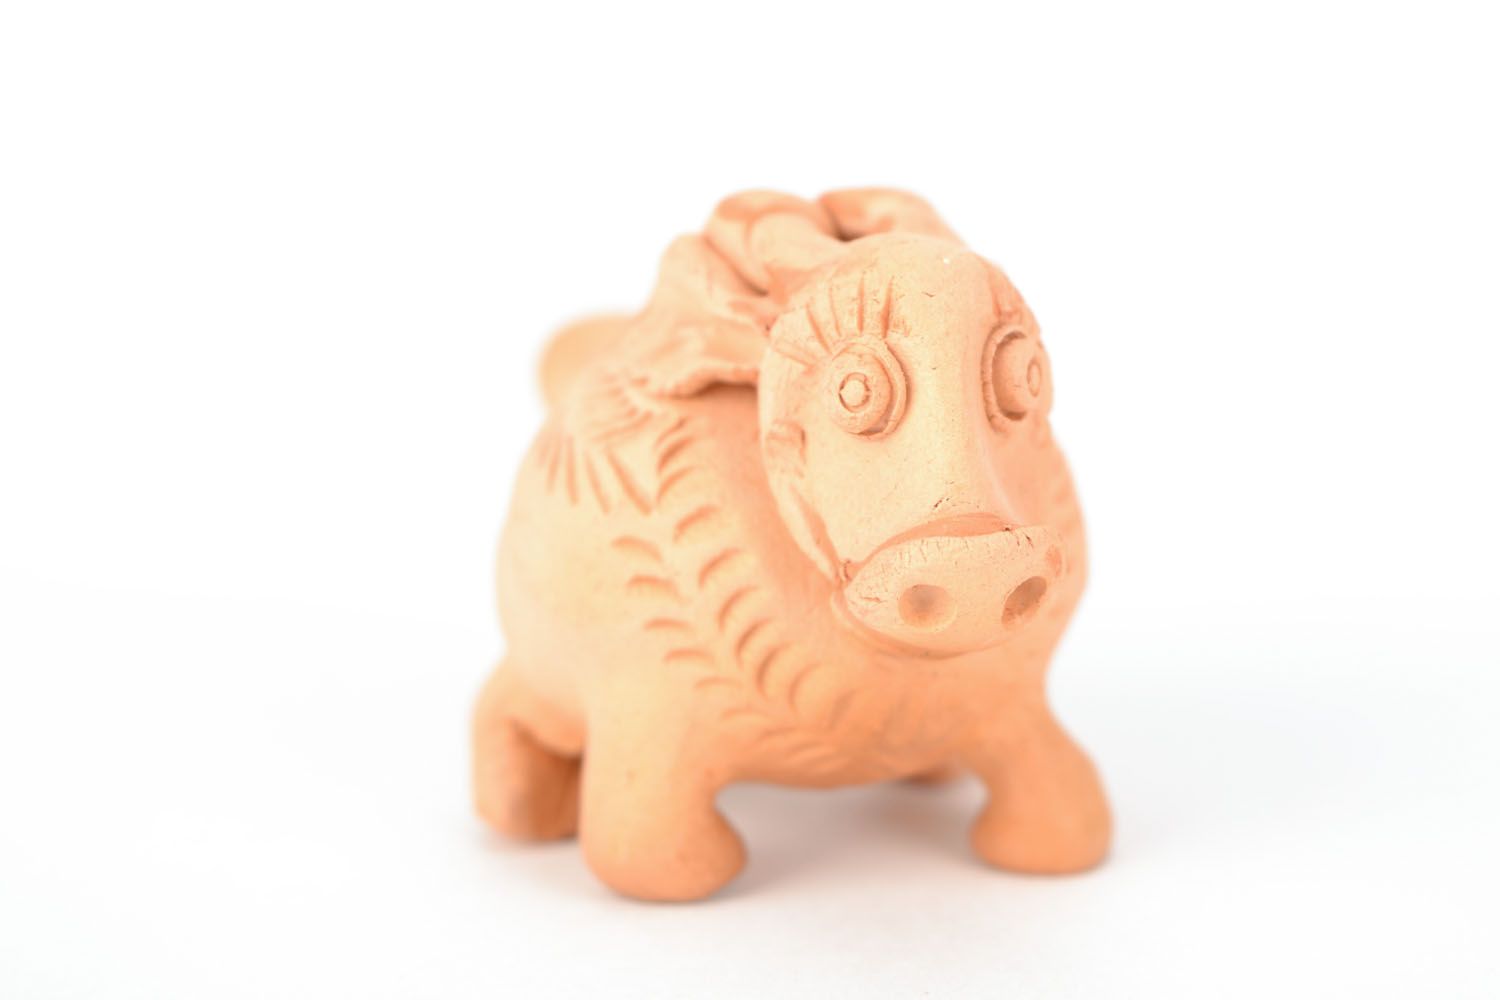 Apito de argila brinquedo de cerâmica artesanal em forma do carneiro  foto 4